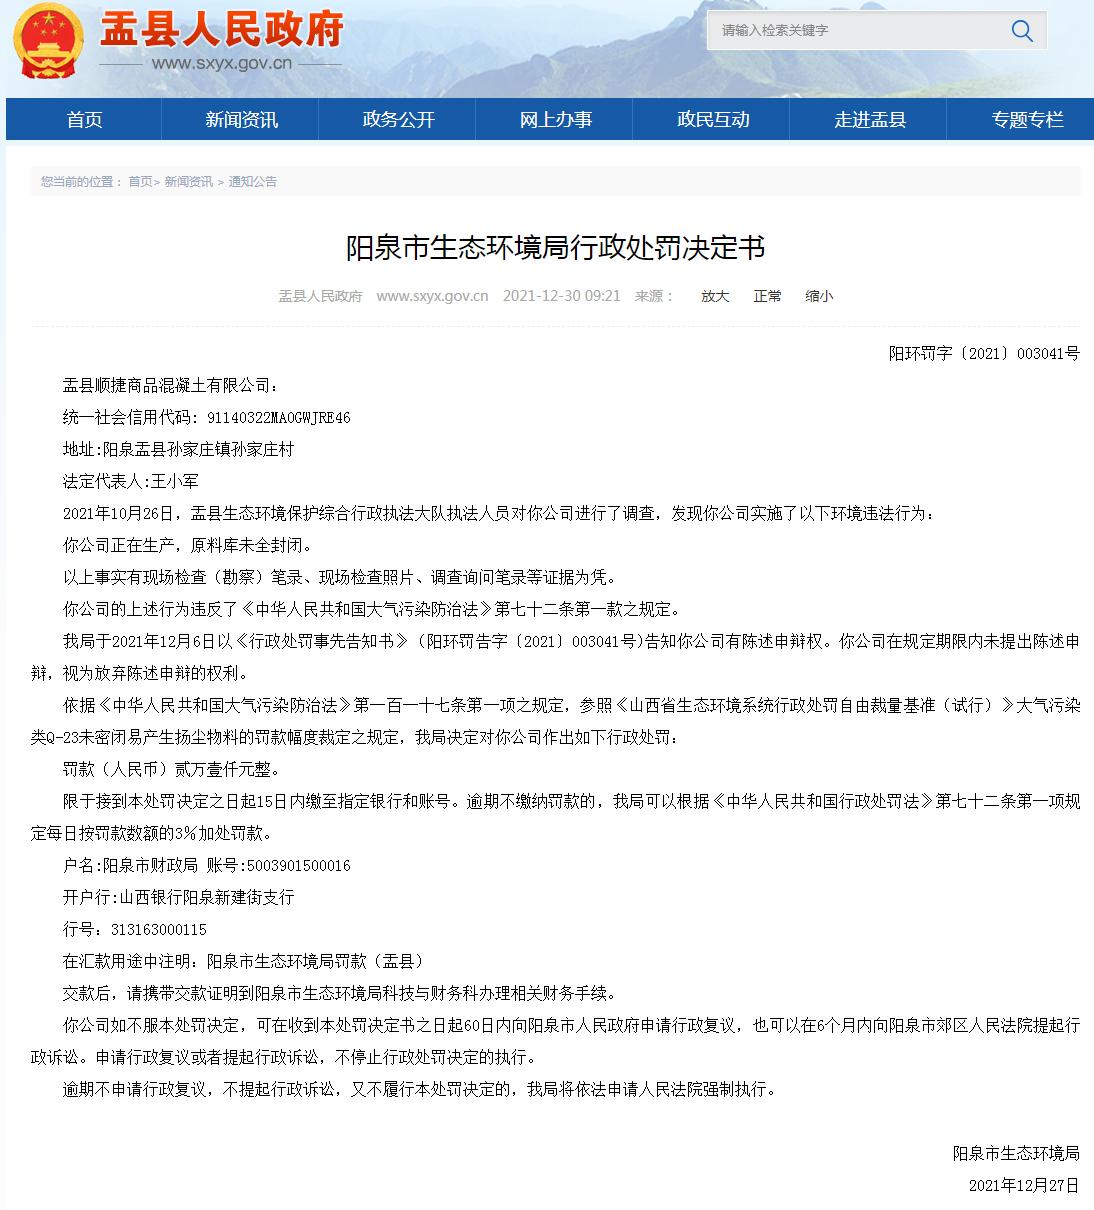 盂县顺捷商品混凝土有限公司涉嫌环境污染被罚